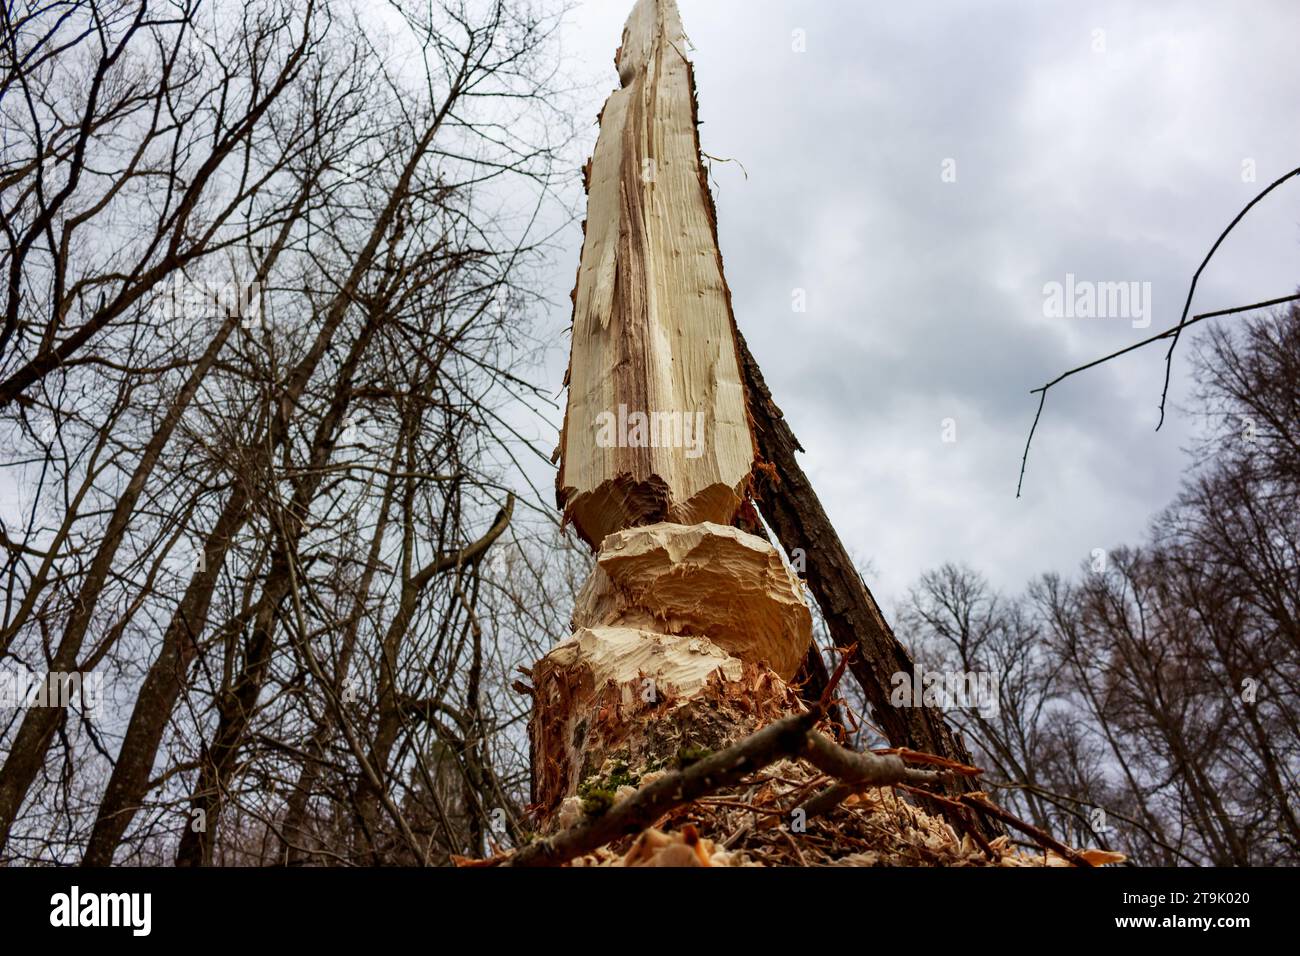 Castors mâchant des arbres dans une zone forestière sauvage. Restes d'un arbre rongé. Sculpture créée par des castors Banque D'Images